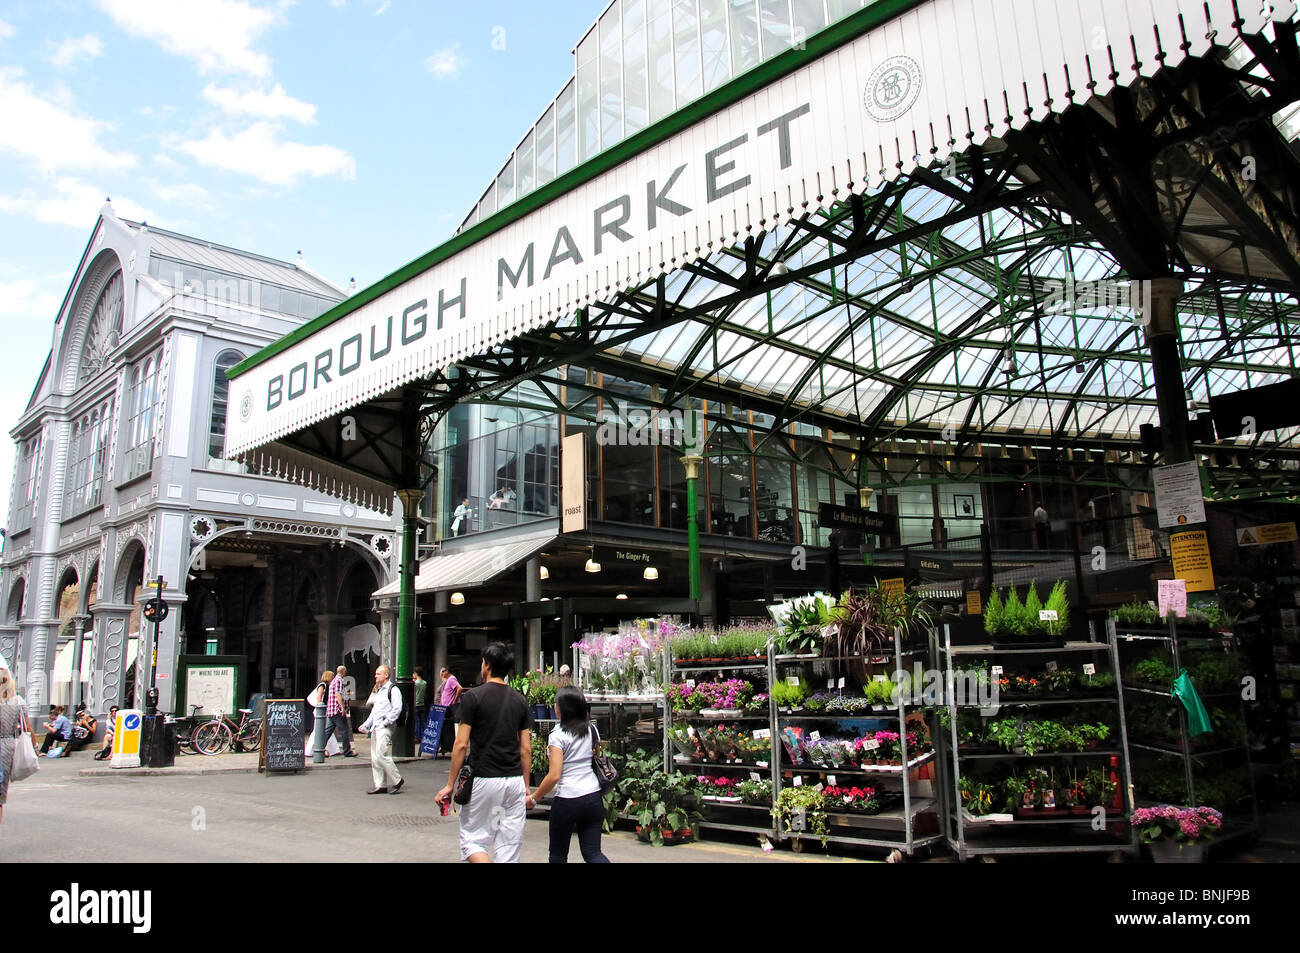 Borough Market, Southwark Street, Southwark, The London Borough of Southwark, Greater London, England, United Kingdom Stock Photo